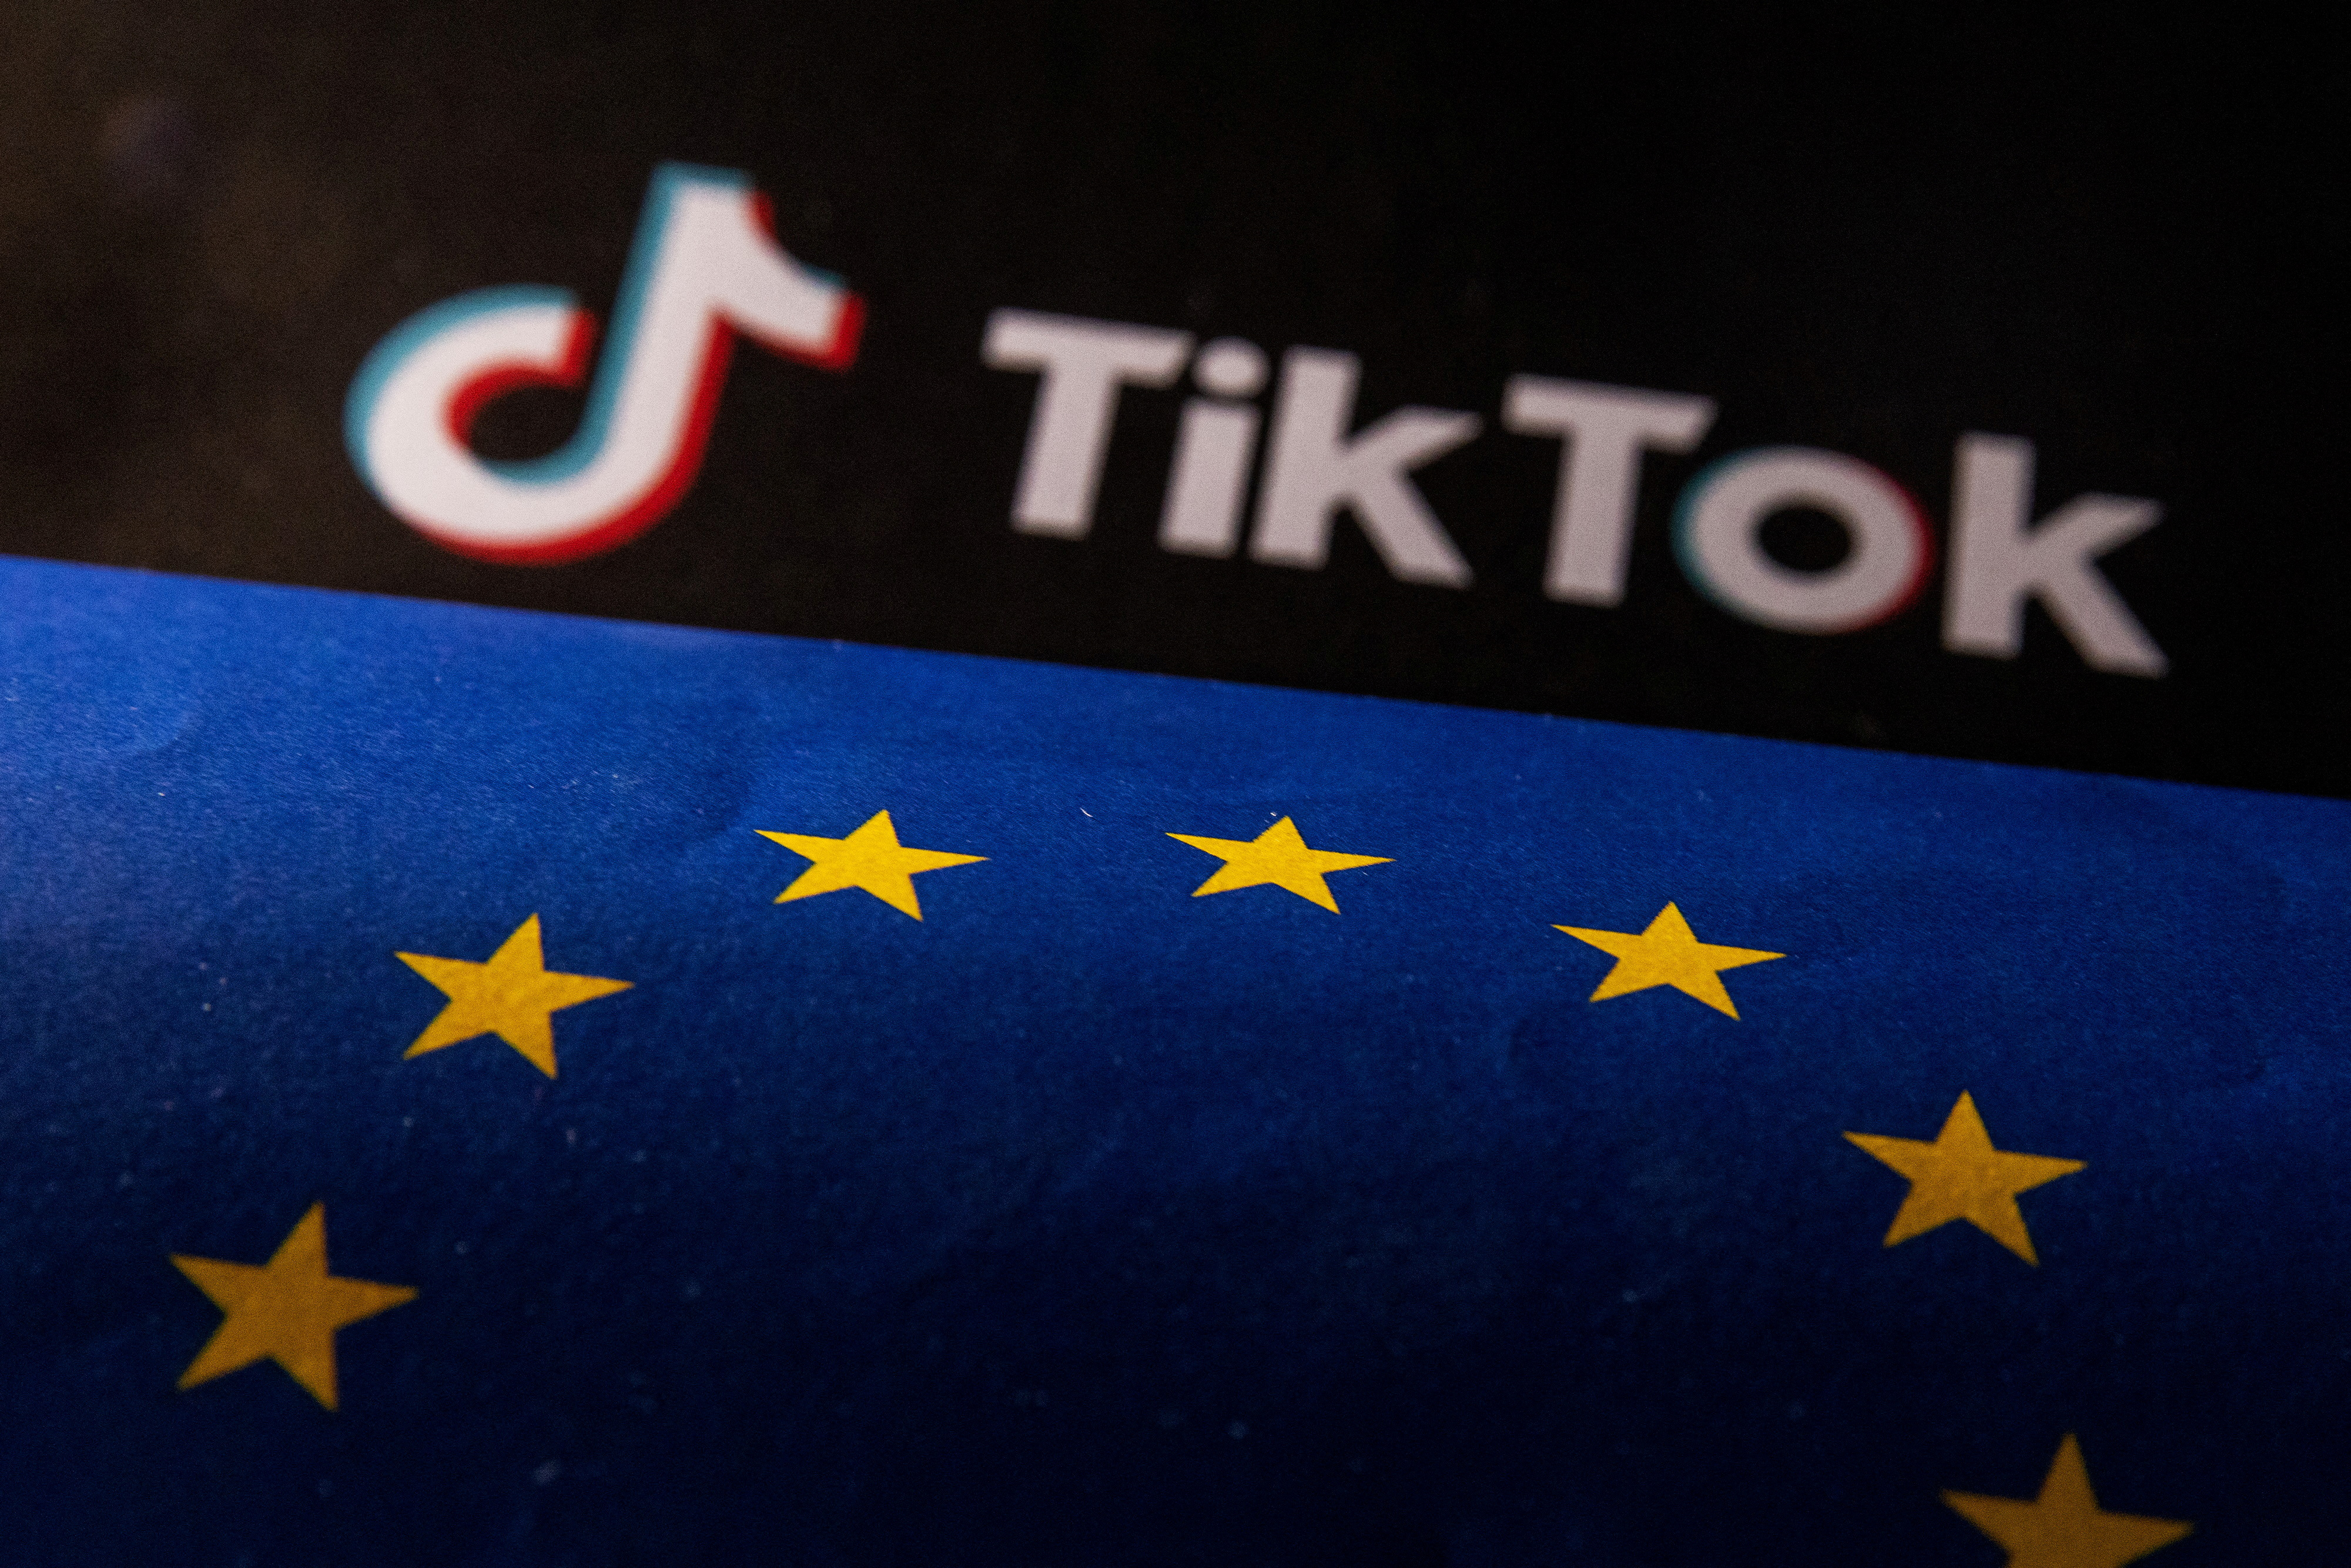 Illustration shows EU flag and TikTok logo